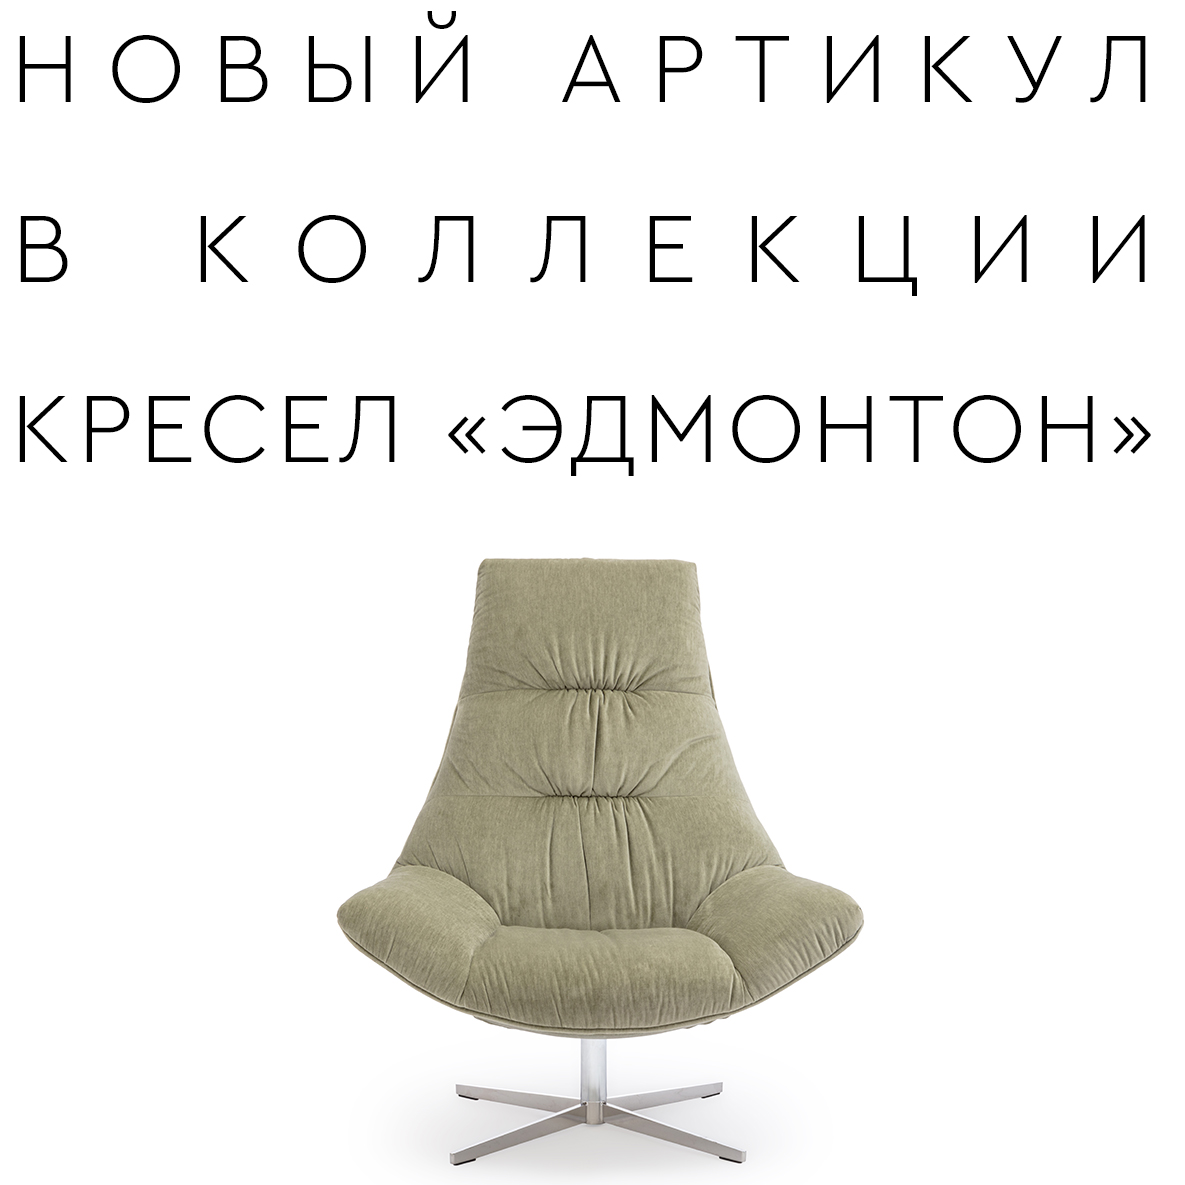 Новое кресло «ЭДМОНТОН»